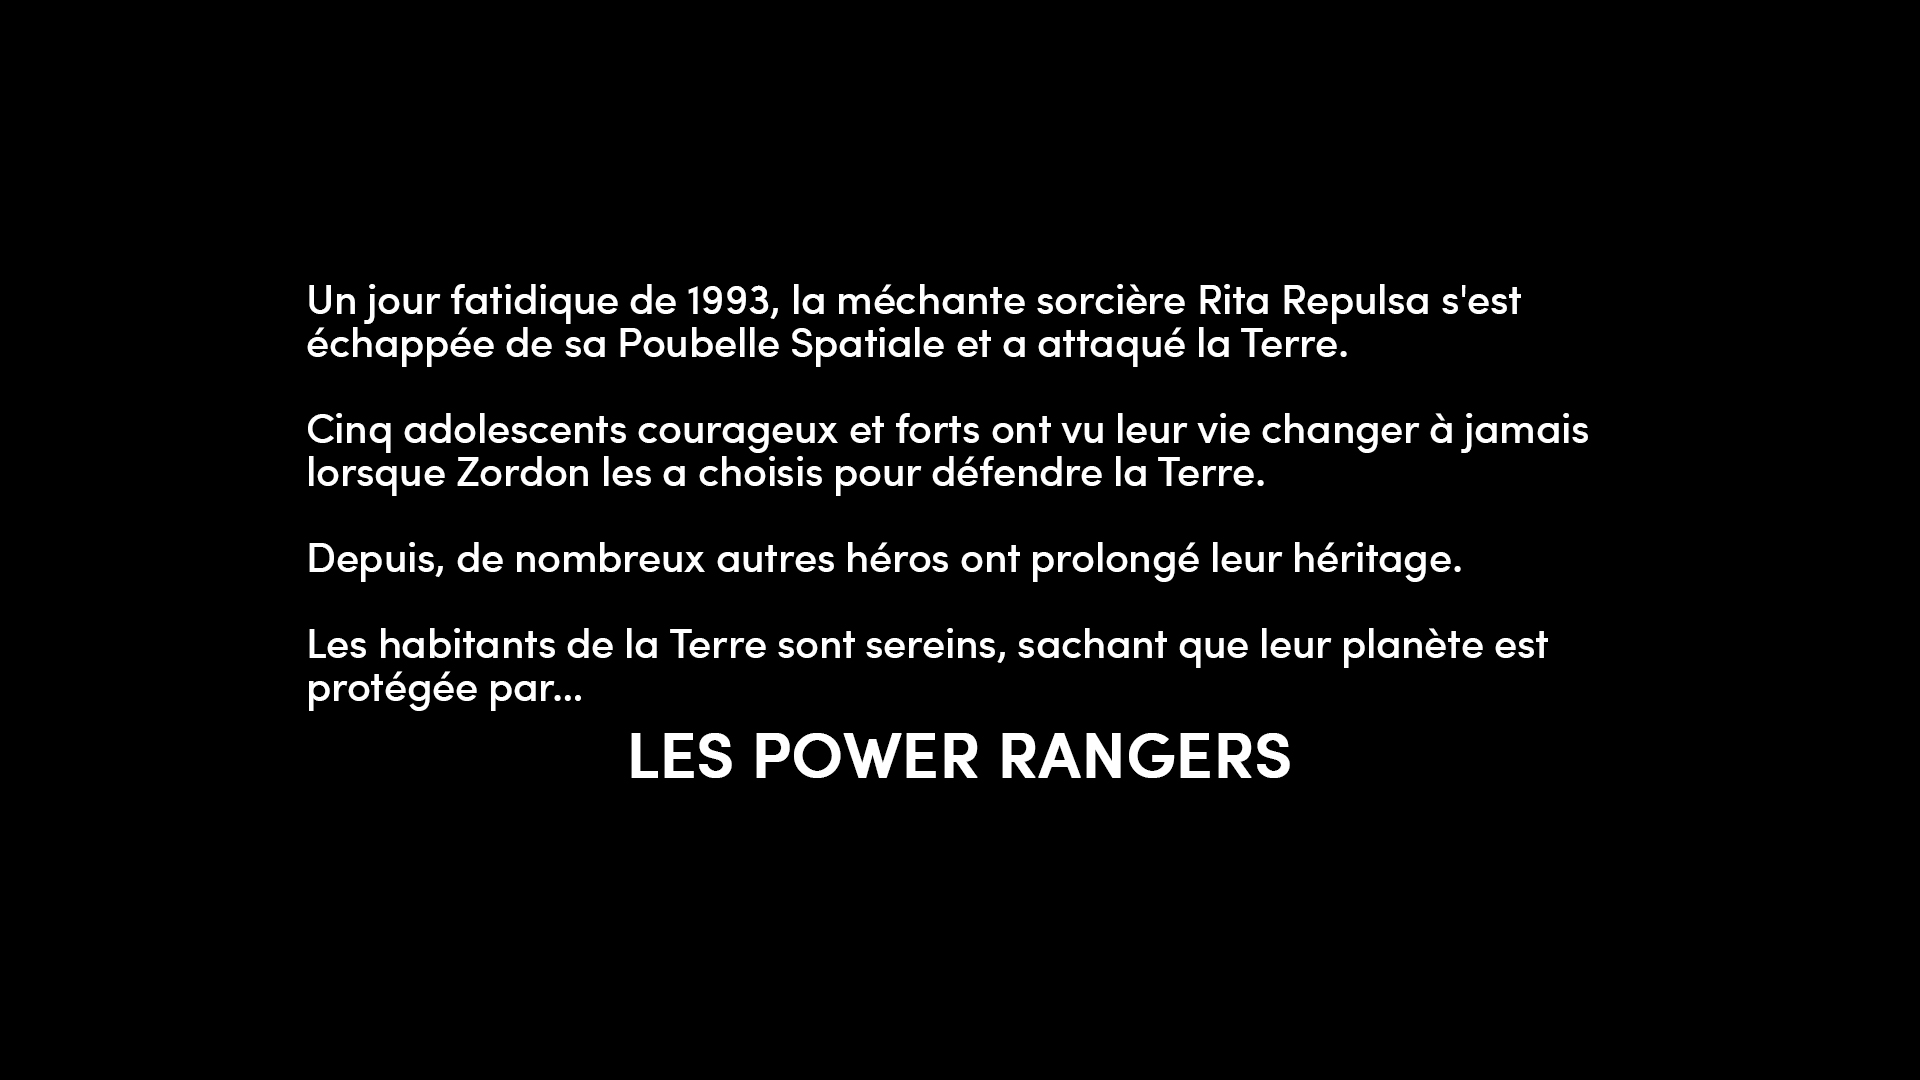 Power Rangers - Toujours vers le futur